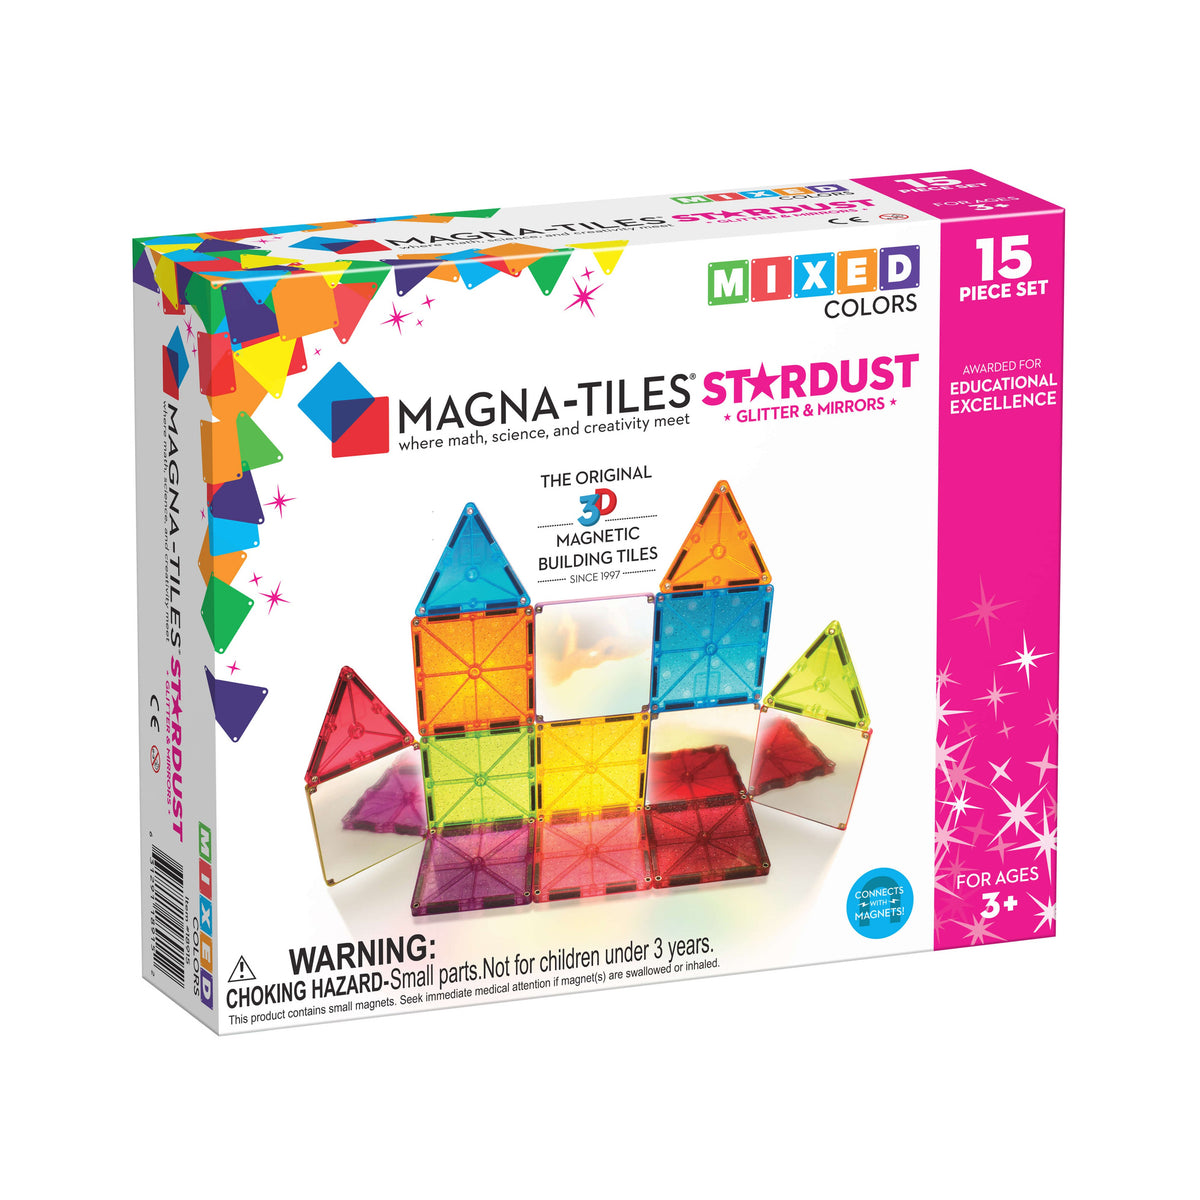 magna-tiles-tiles-stardust-15-piece-set- (1)